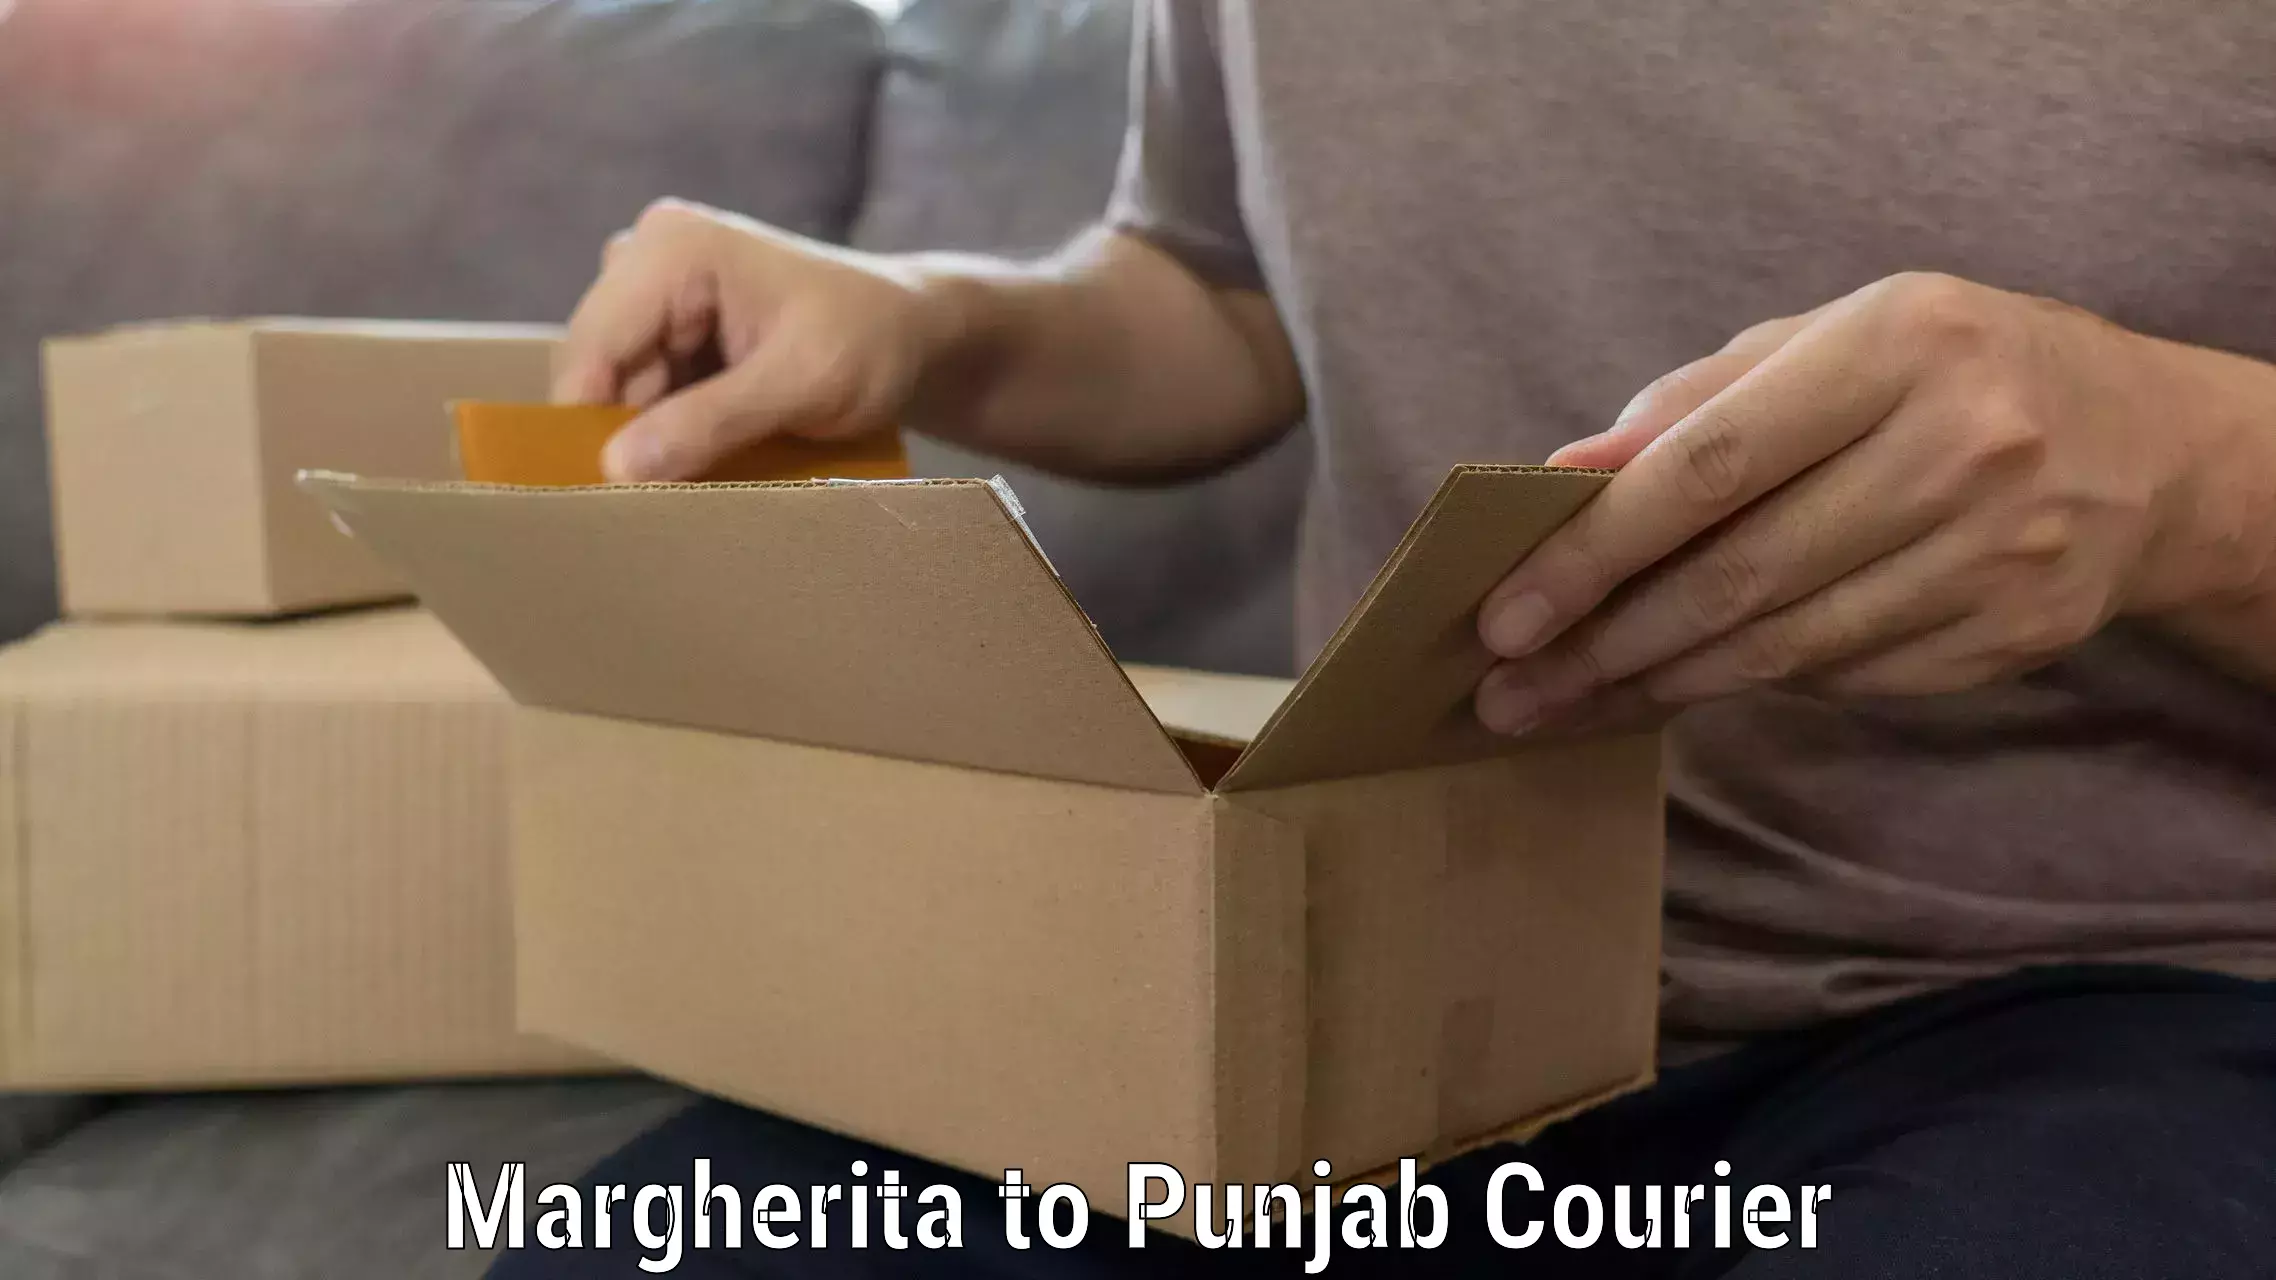 Furniture relocation experts Margherita to Punjab